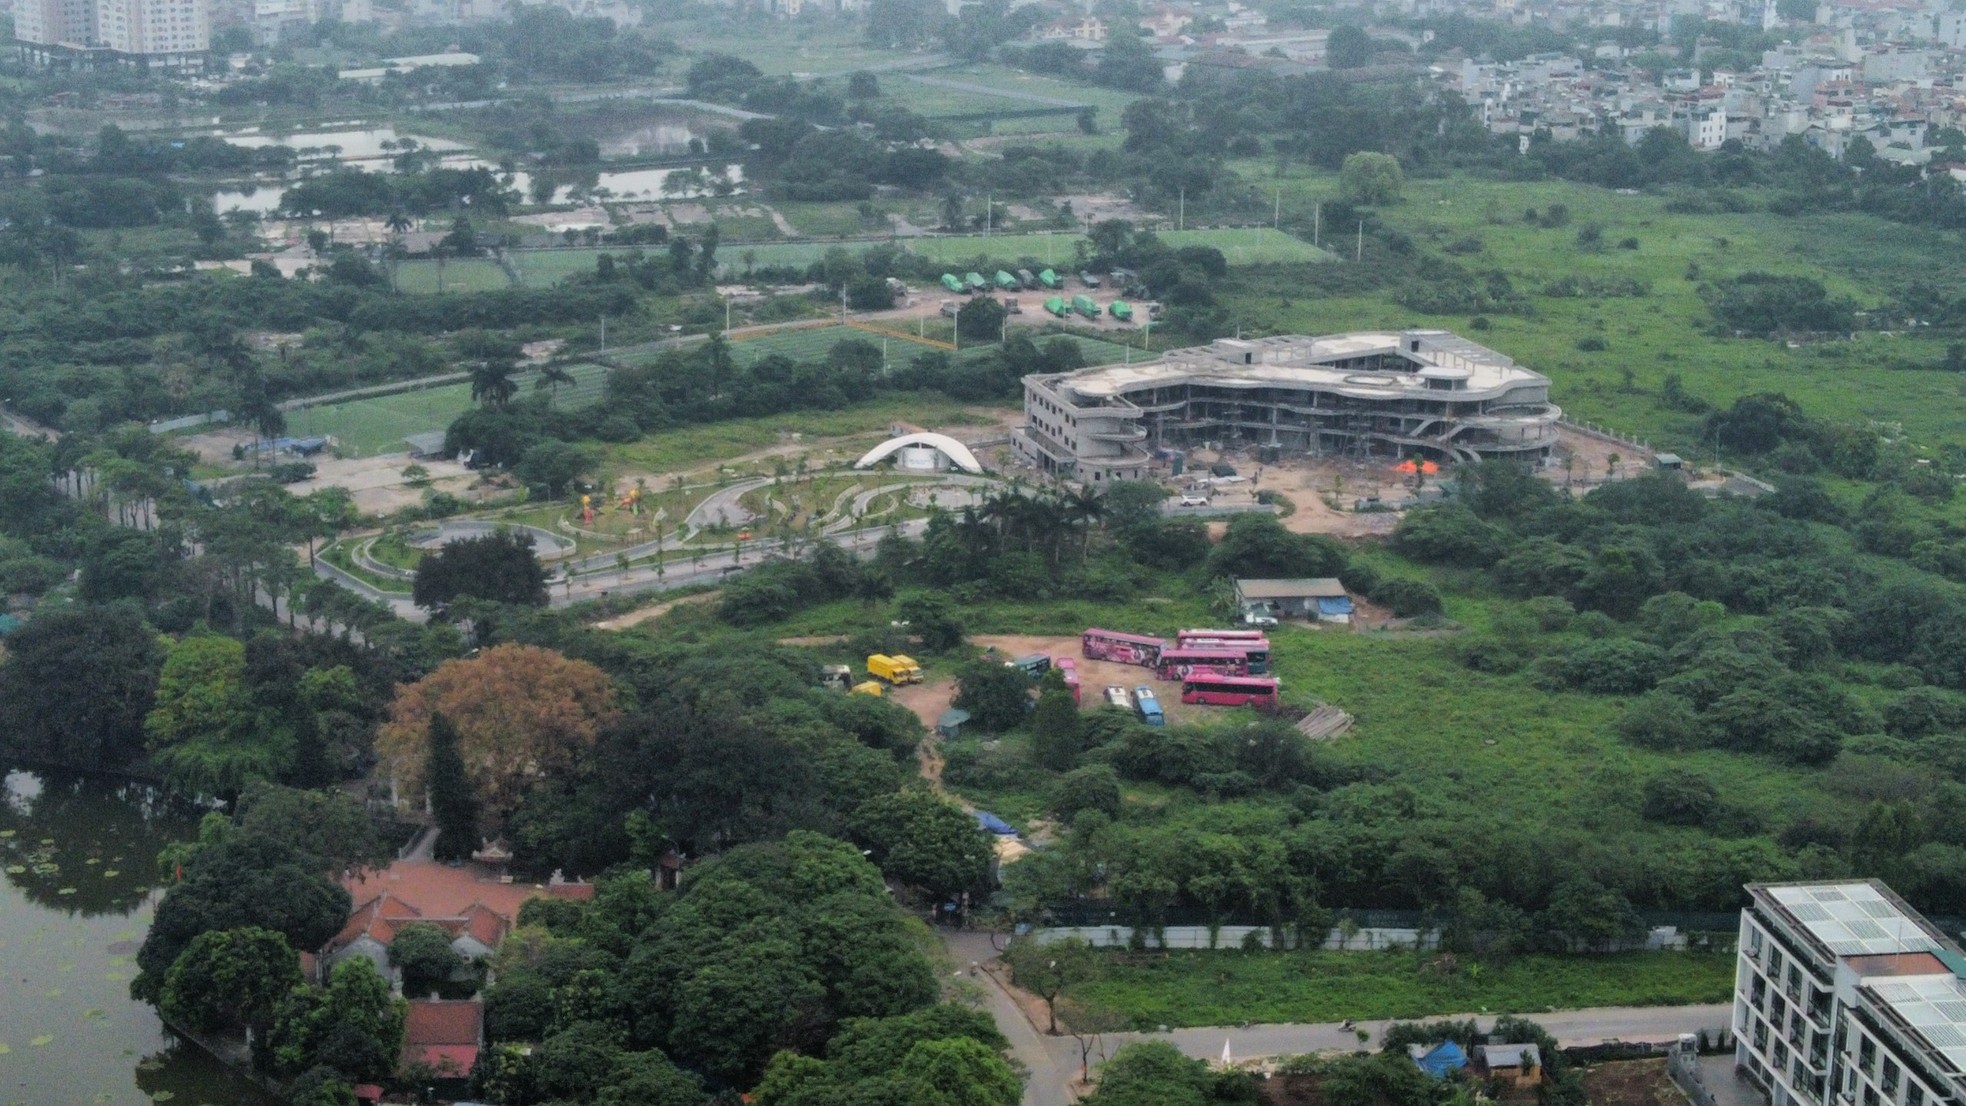 Khu đất 'mọc' bãi xe lậu nơi phường đông dân nhất Hà Nội chuẩn bị xây trường học - Ảnh 8.